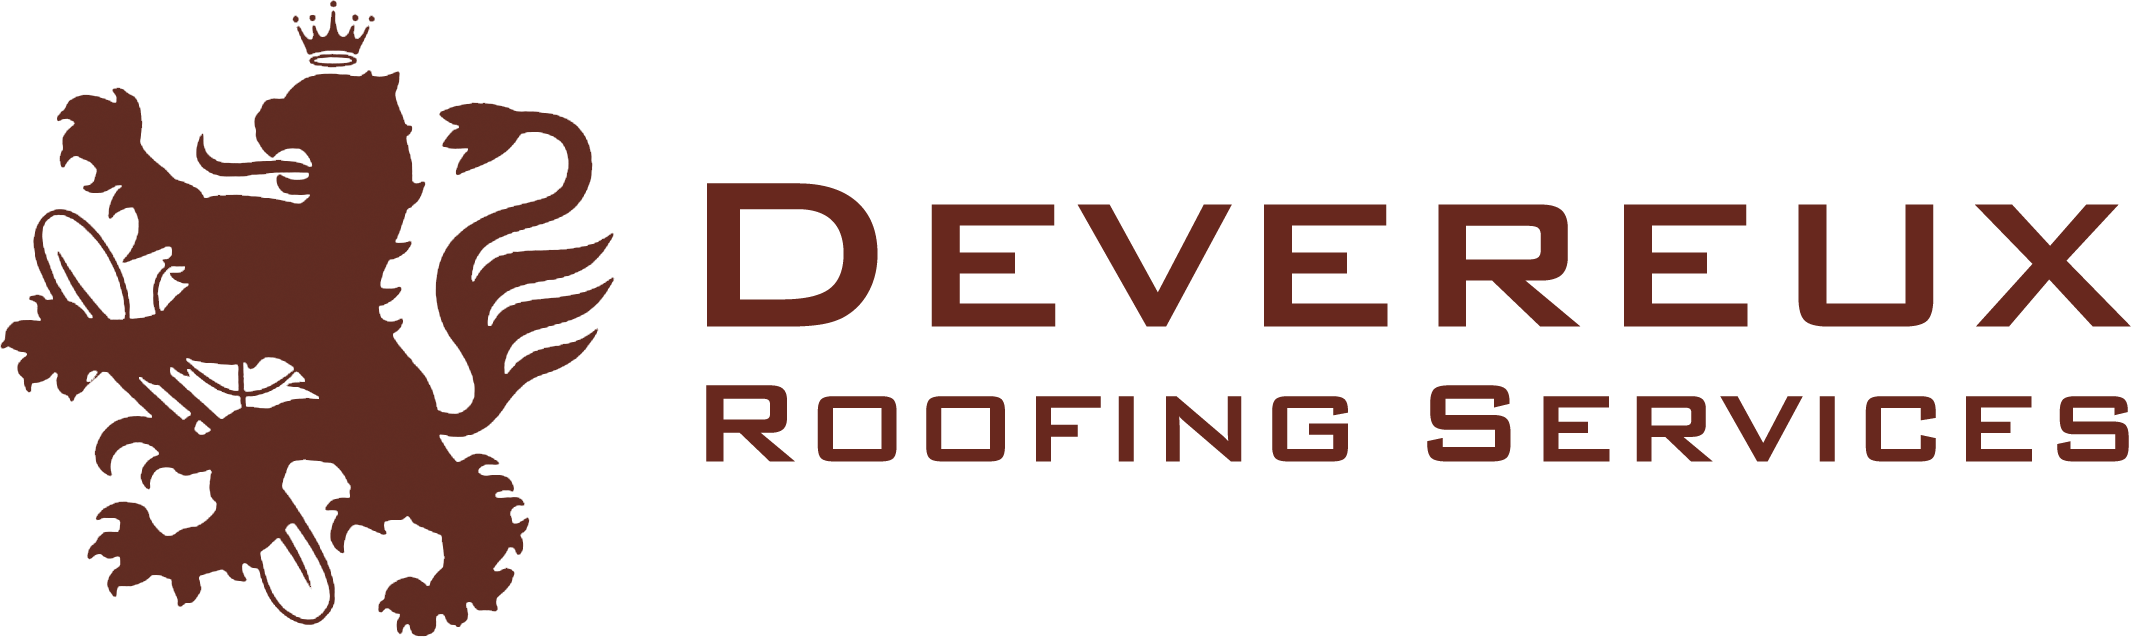 Devereux Roofing Services LTD